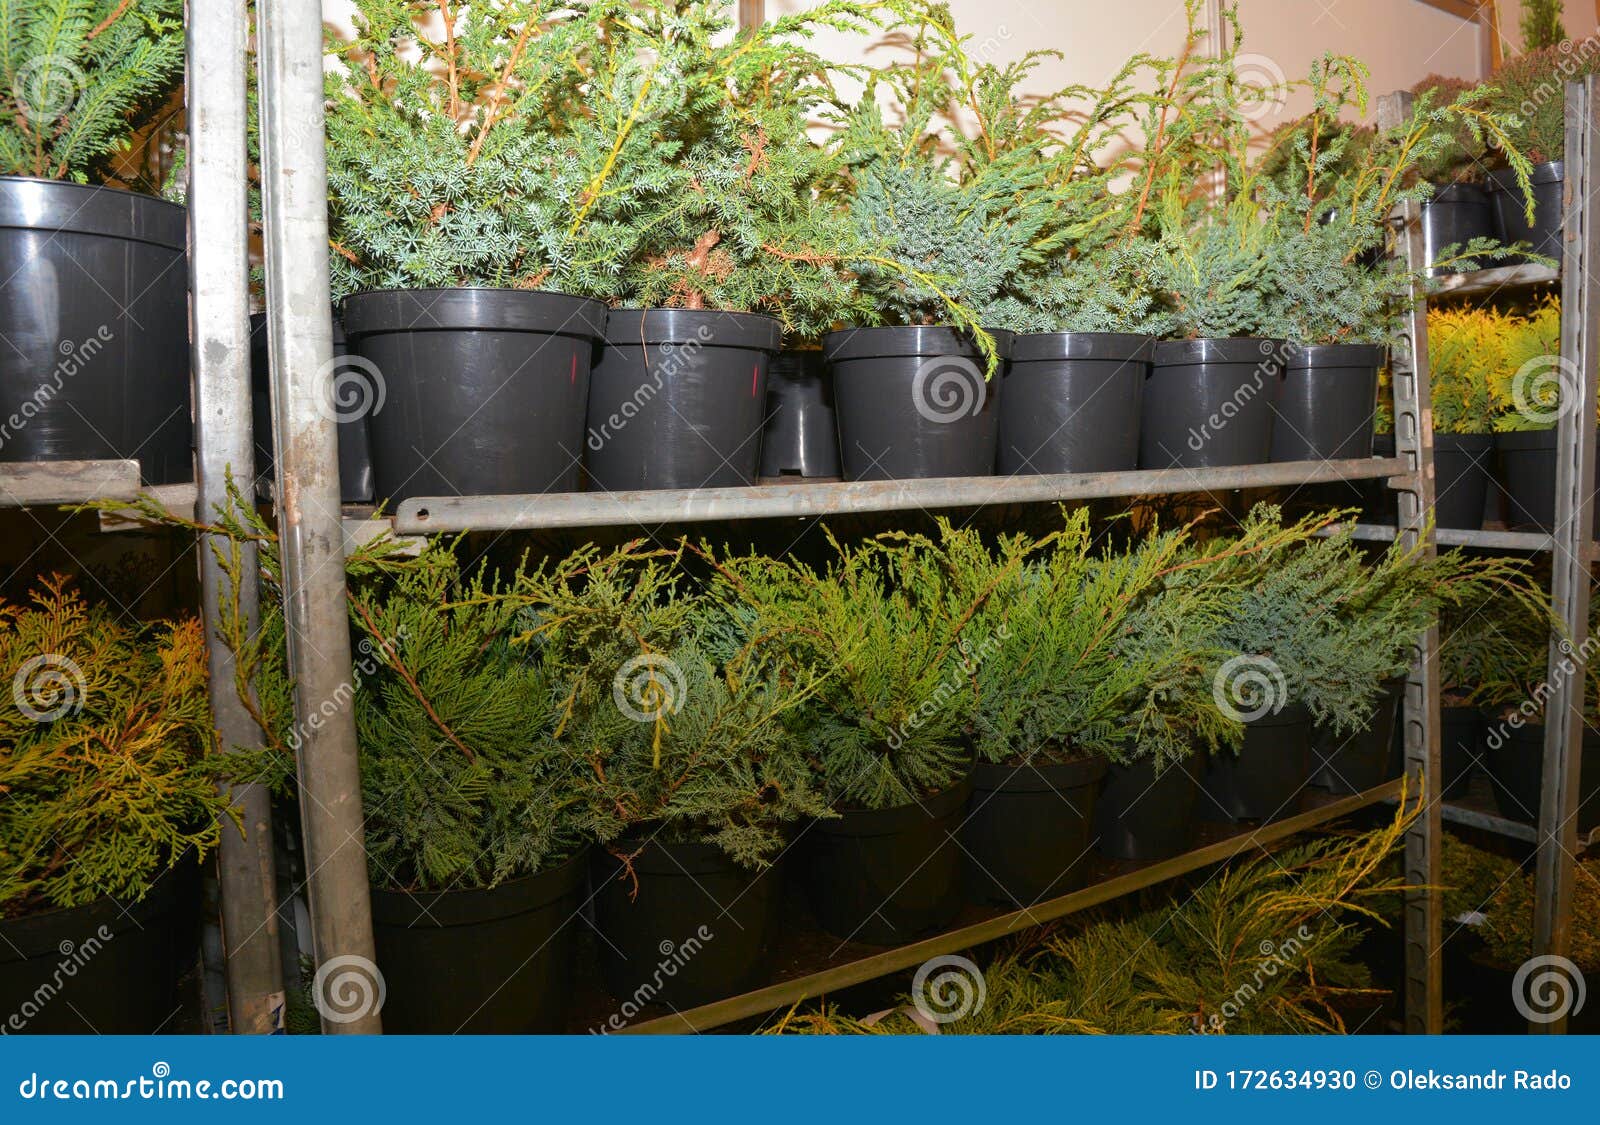 virginian juniper saplings in flower pots for sale